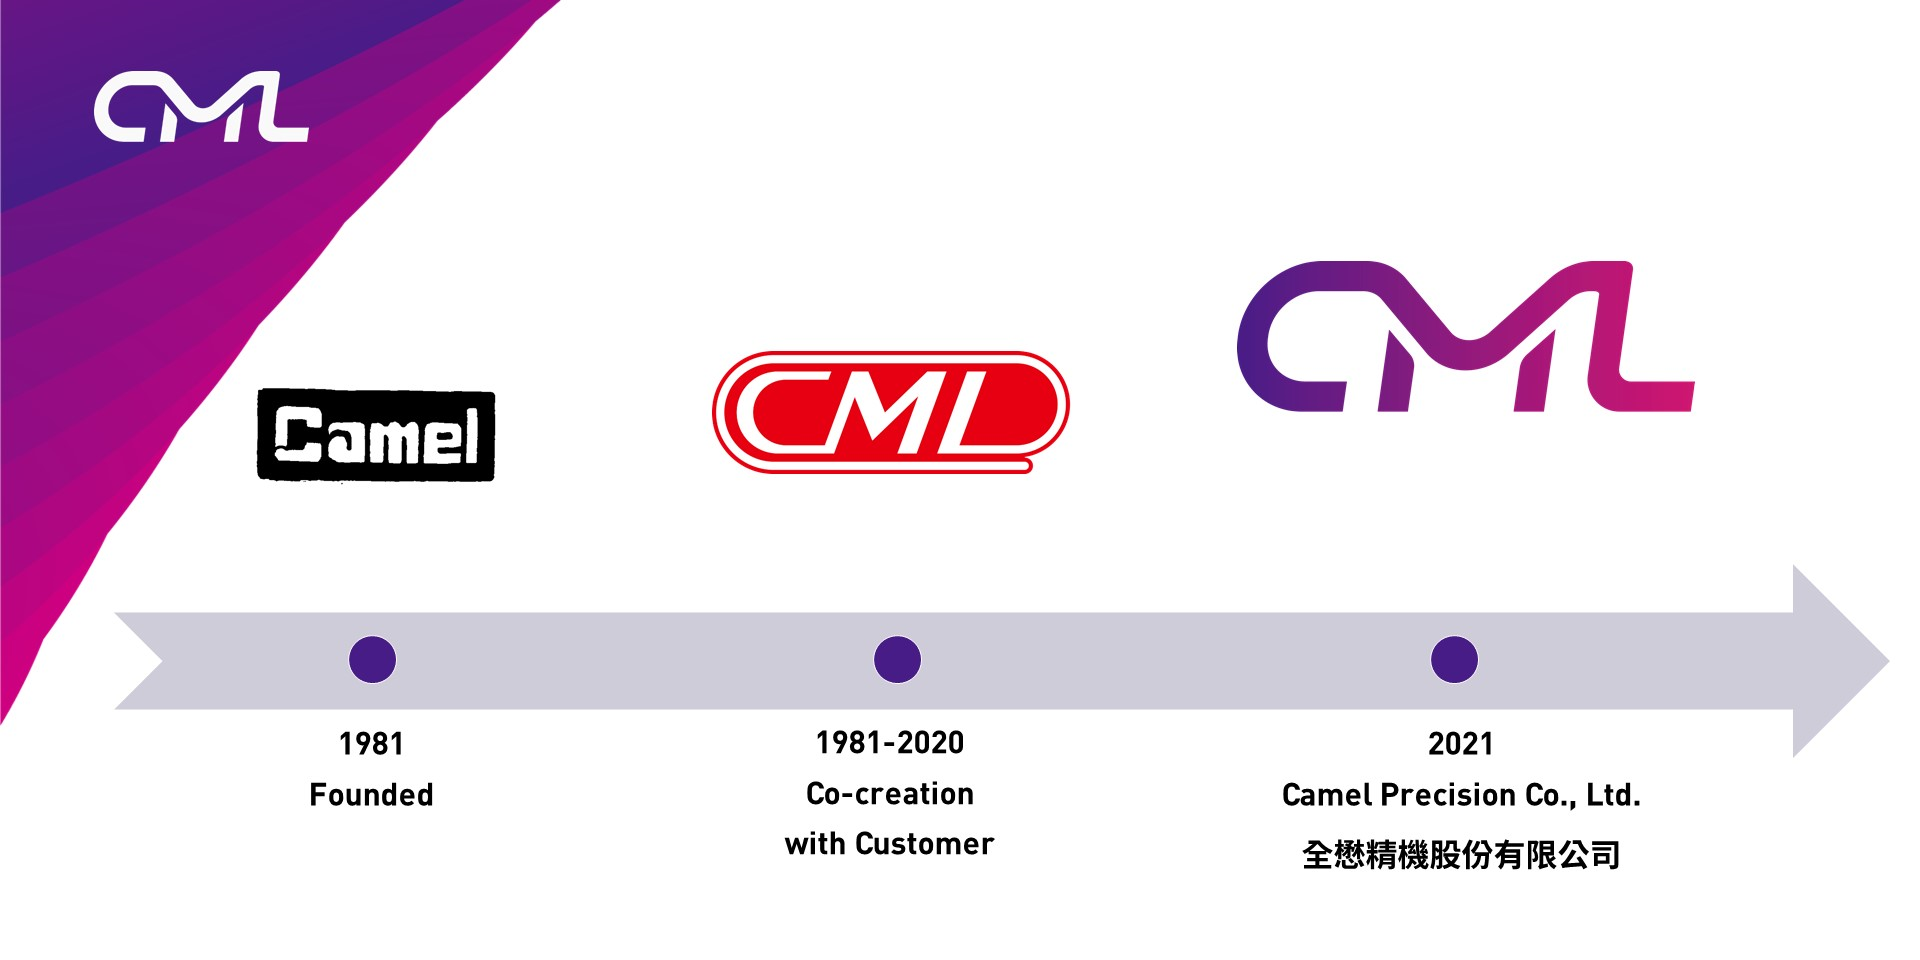 Evoluzione del logo CML